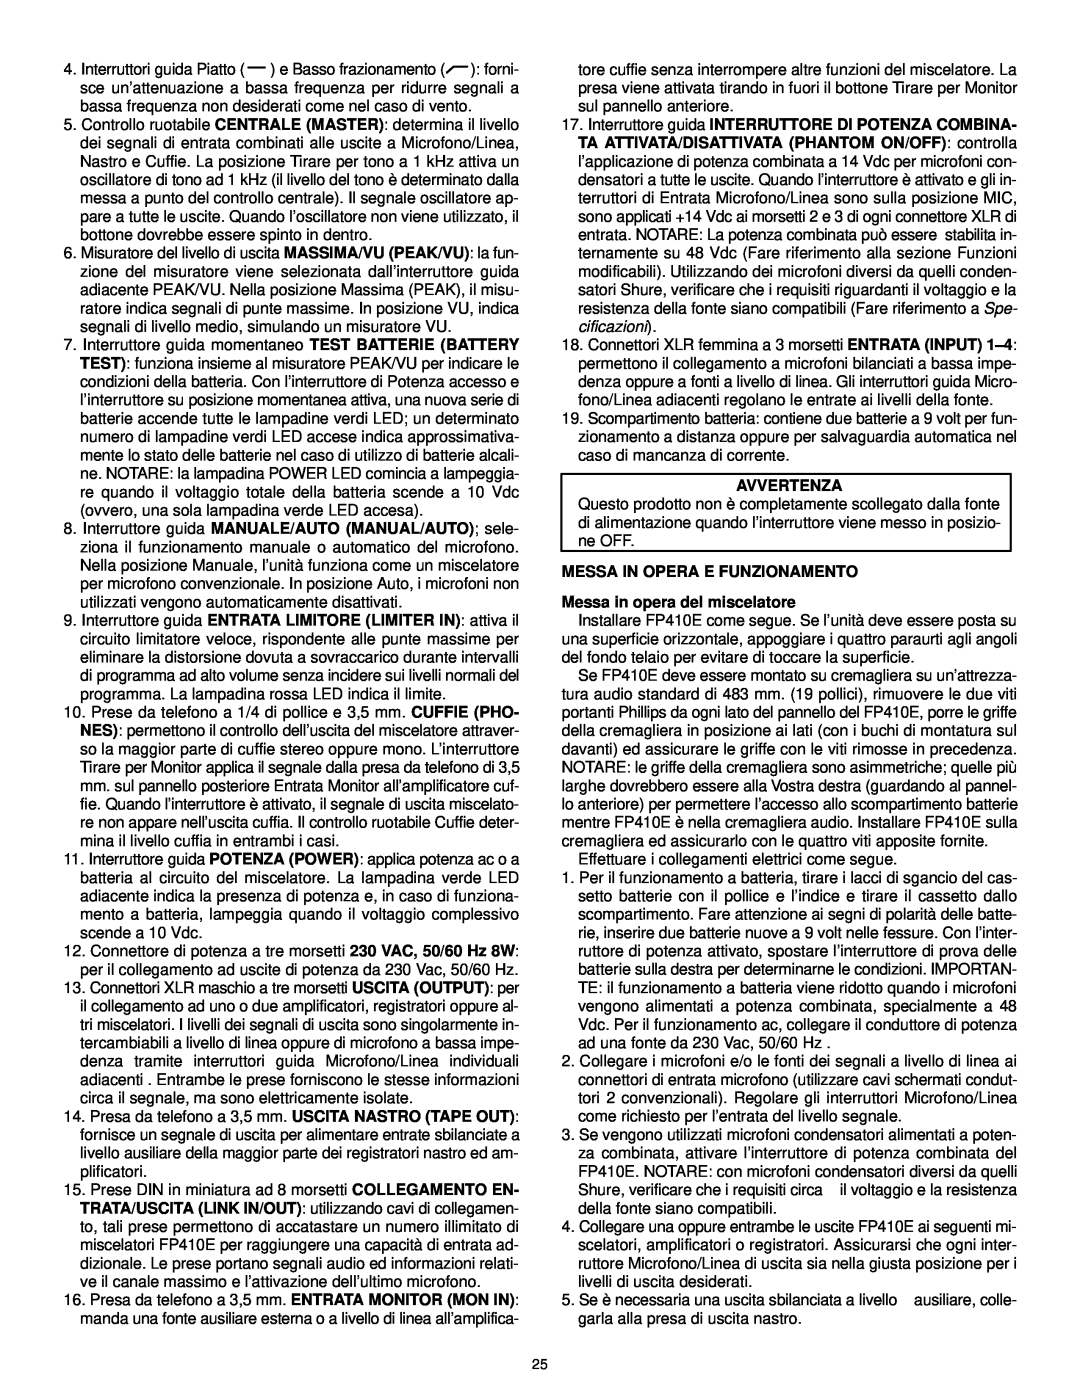 Shure FP410 manual Avvertenza, MESSA IN OPERA E FUNZIONAMENTO Messa in opera del miscelatore 